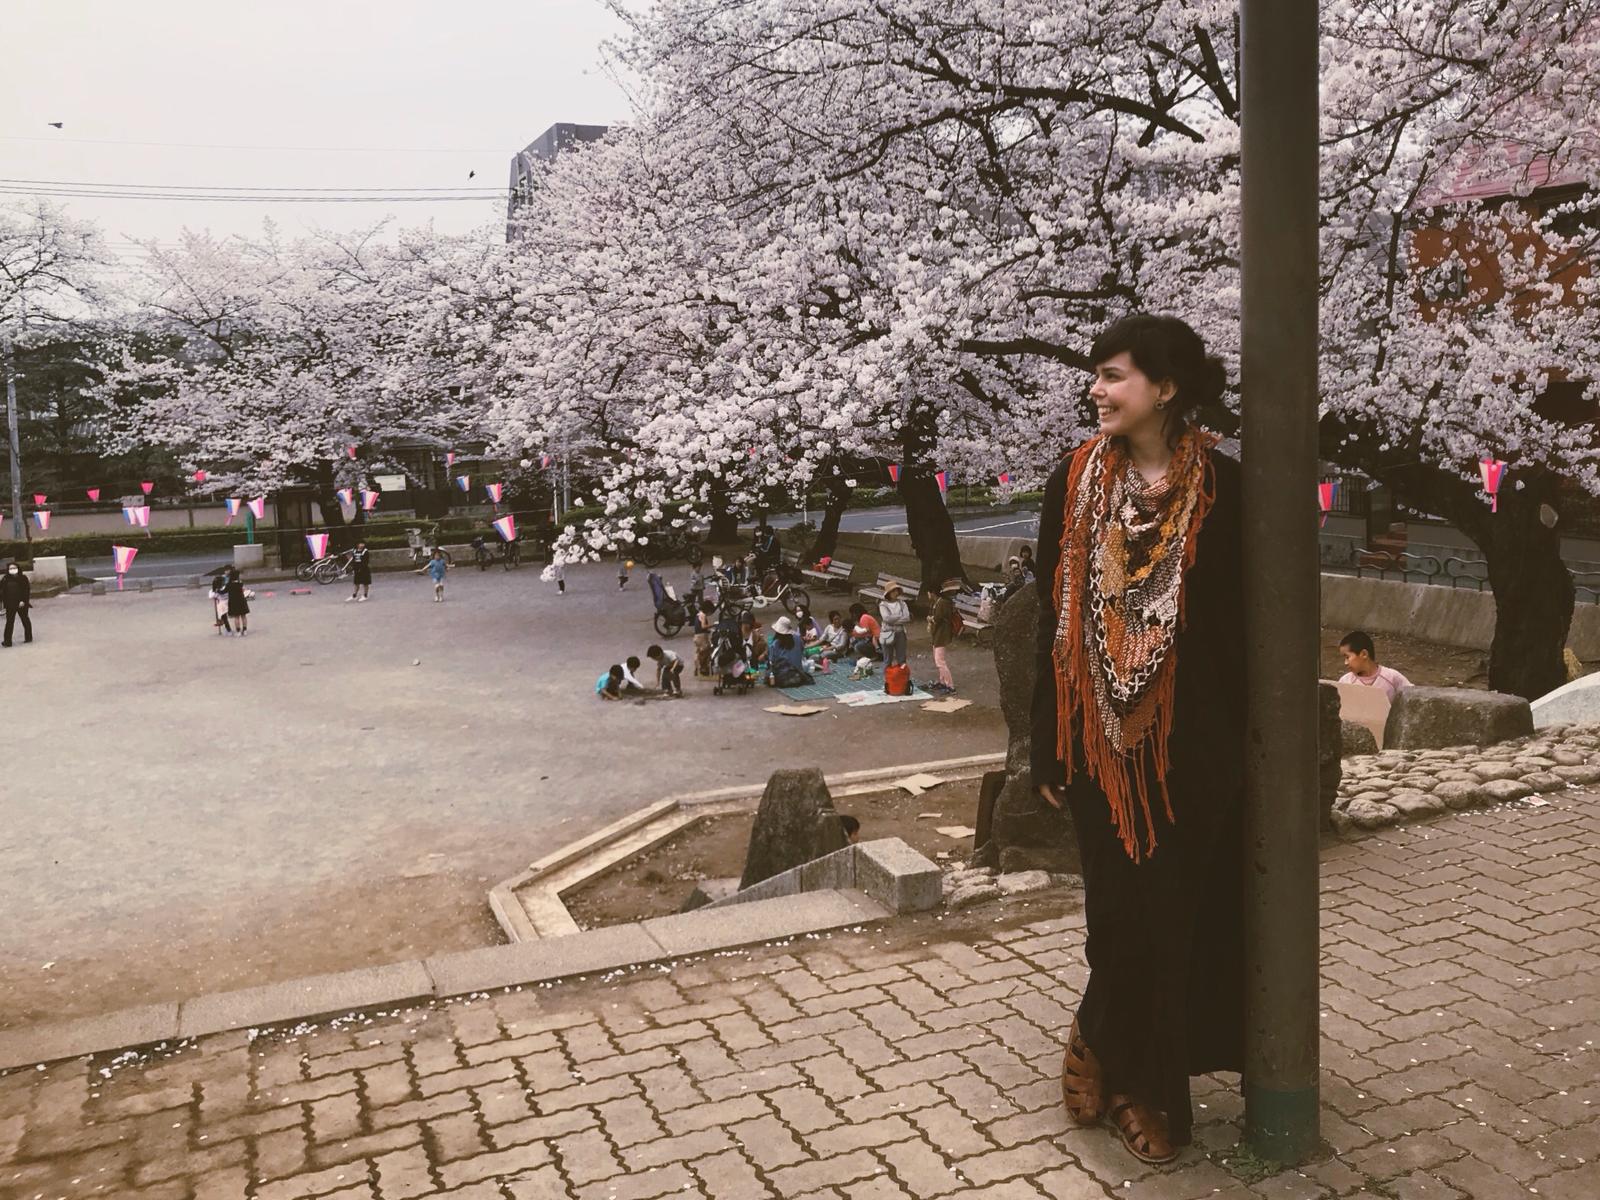 Beatrice Melo escolheu fazer doutorado no Japão e estudar moda sustentável; conheça a história da cearense